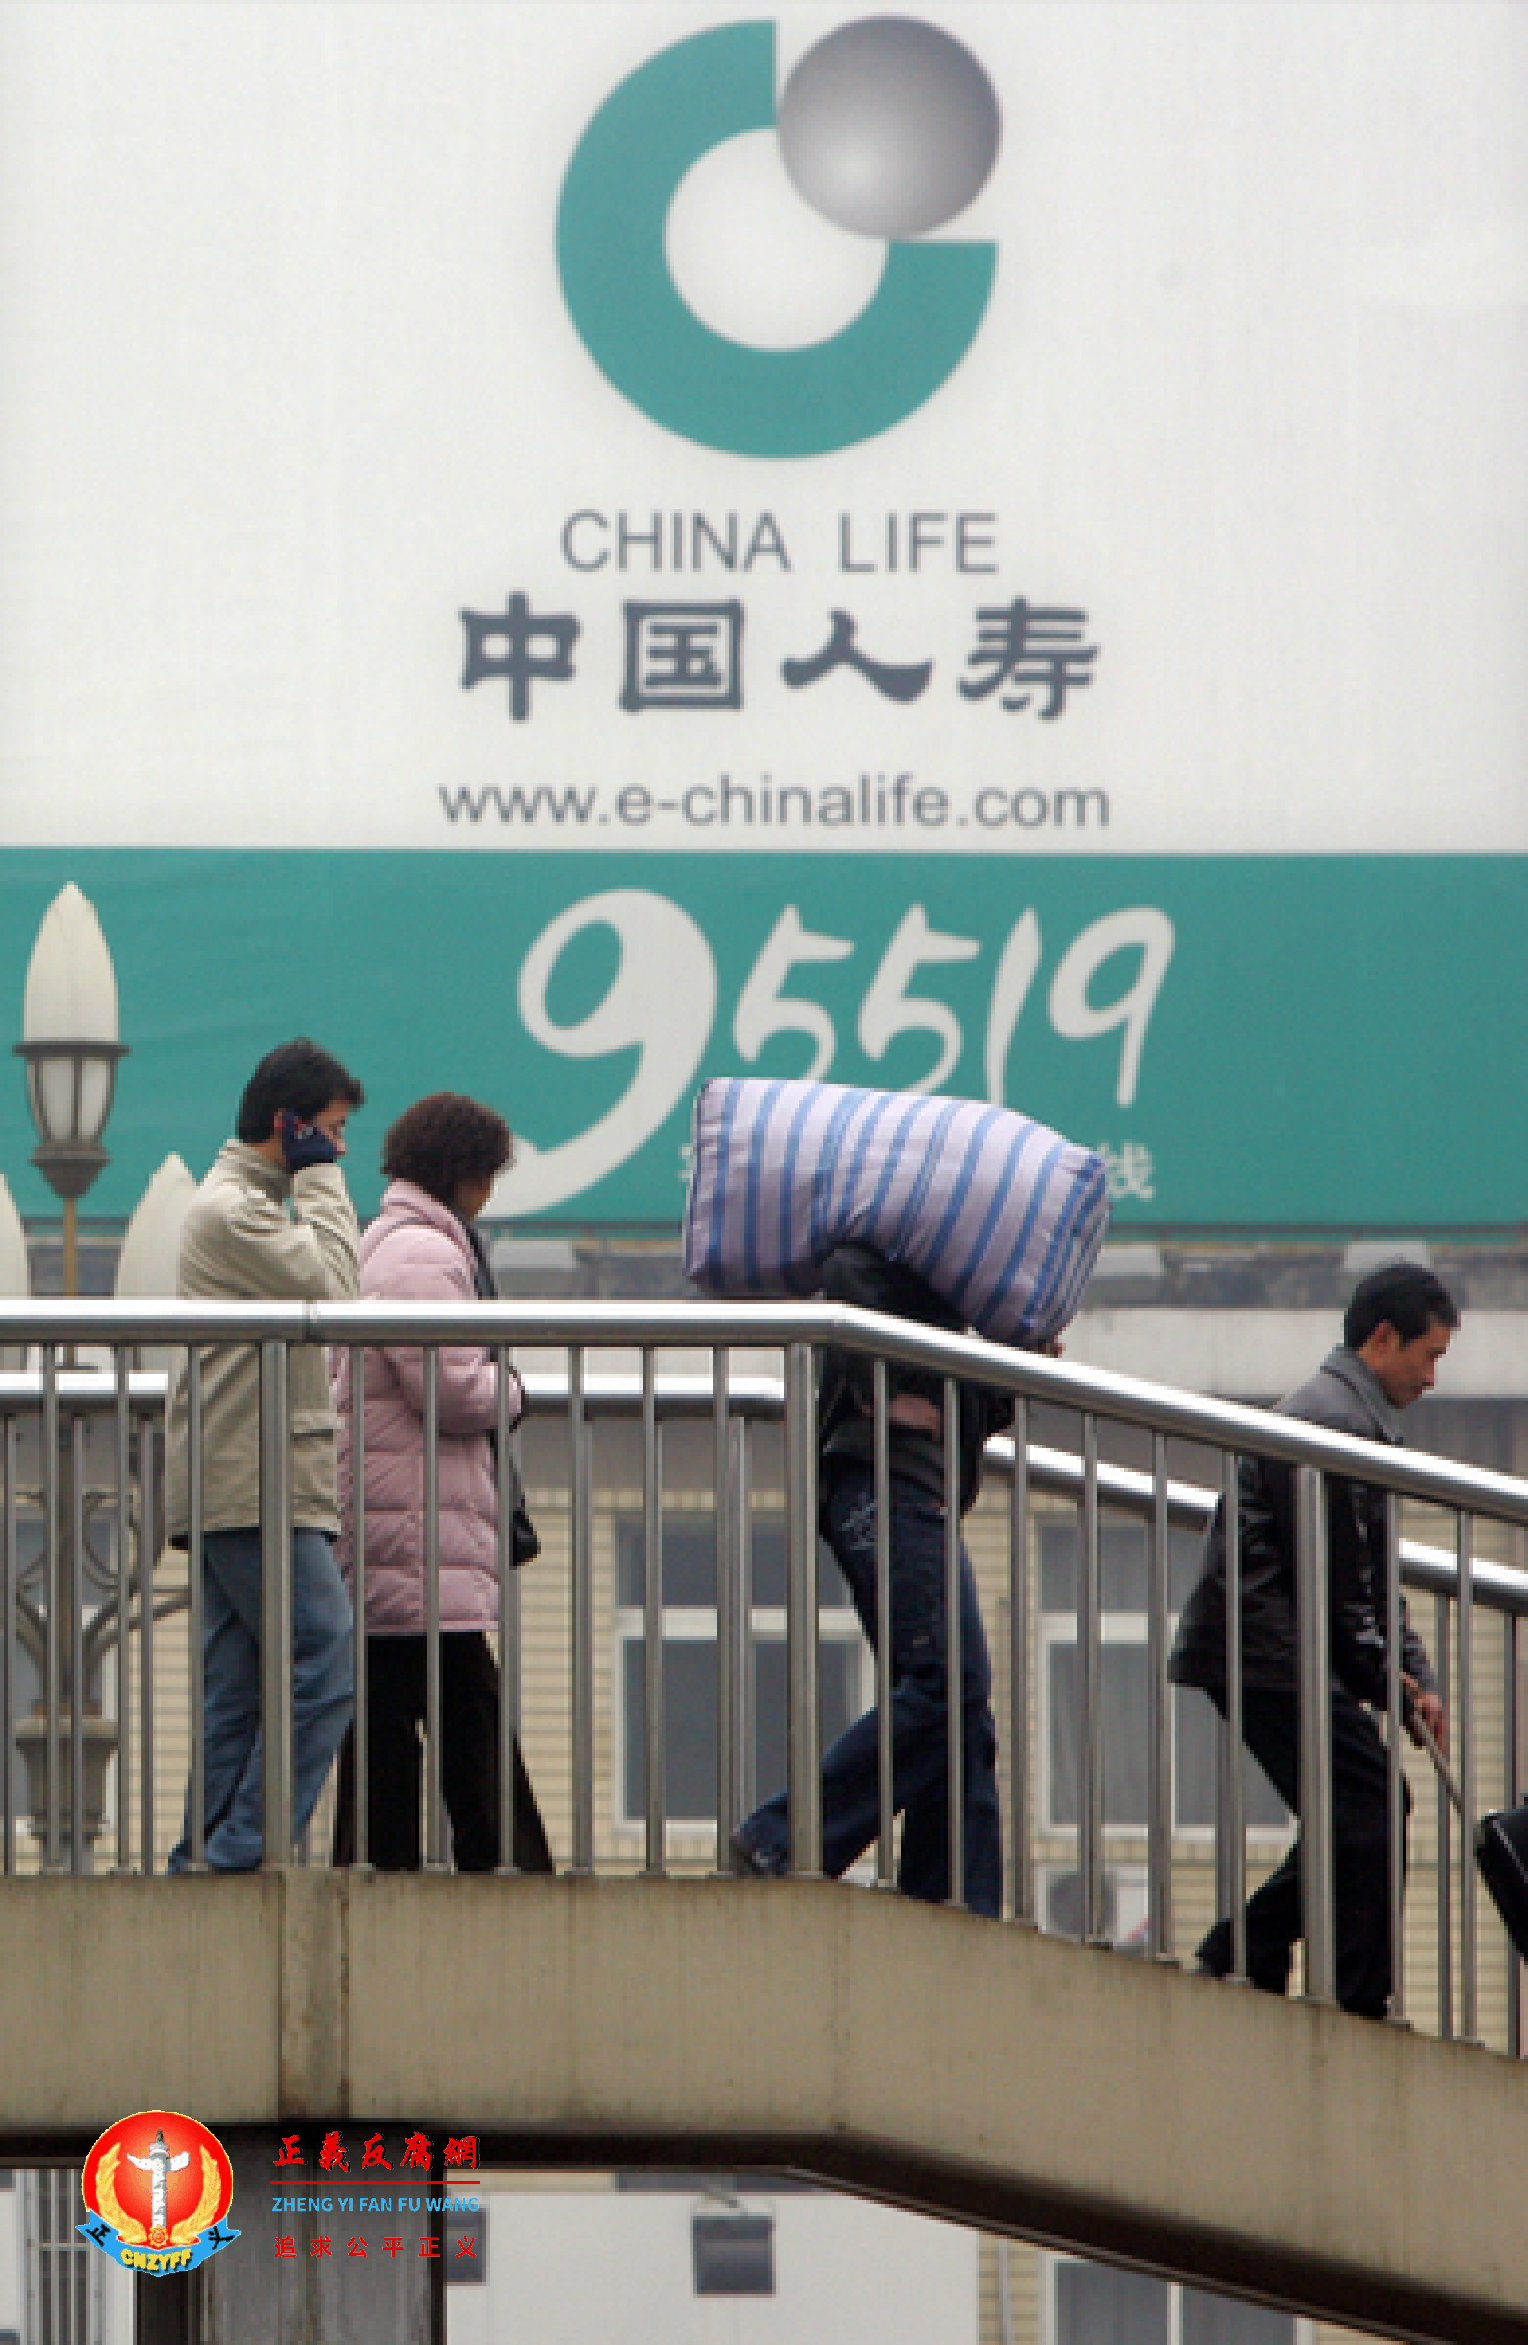 北京，中国人寿的广告看板。.png